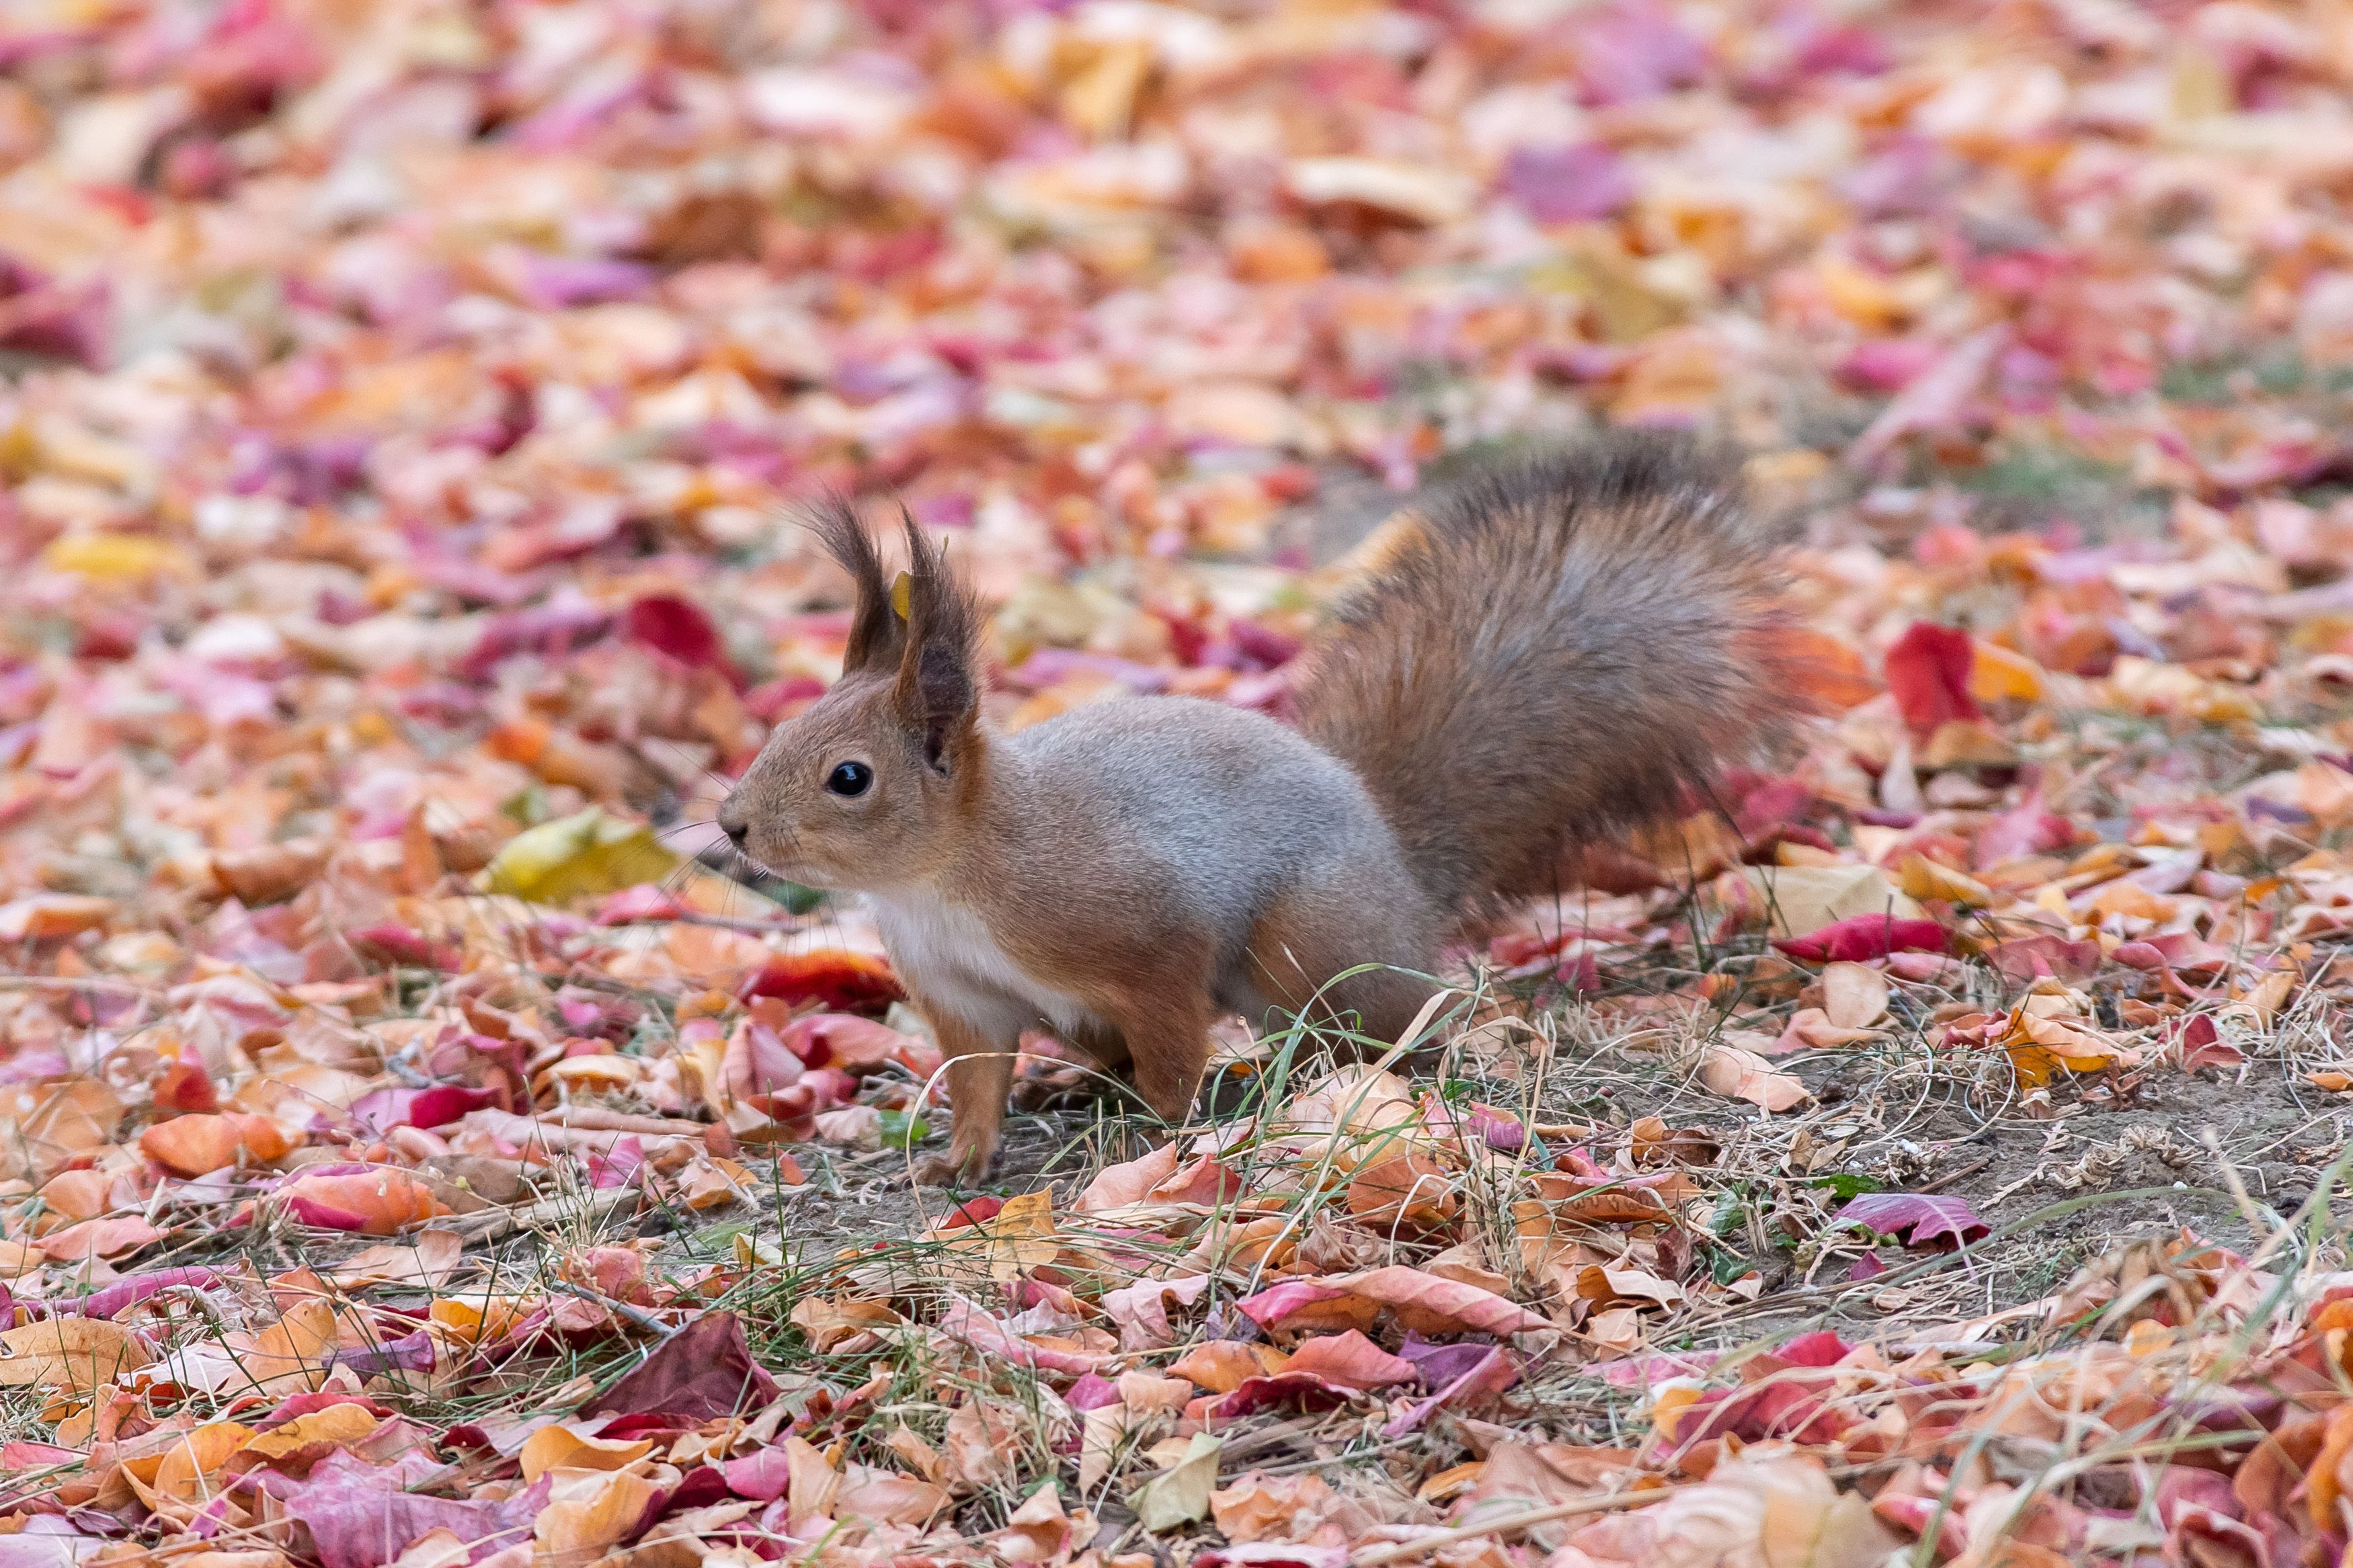 Squirrel, volgograd, russia, wildlife, autumn, , Сторчилов Павел